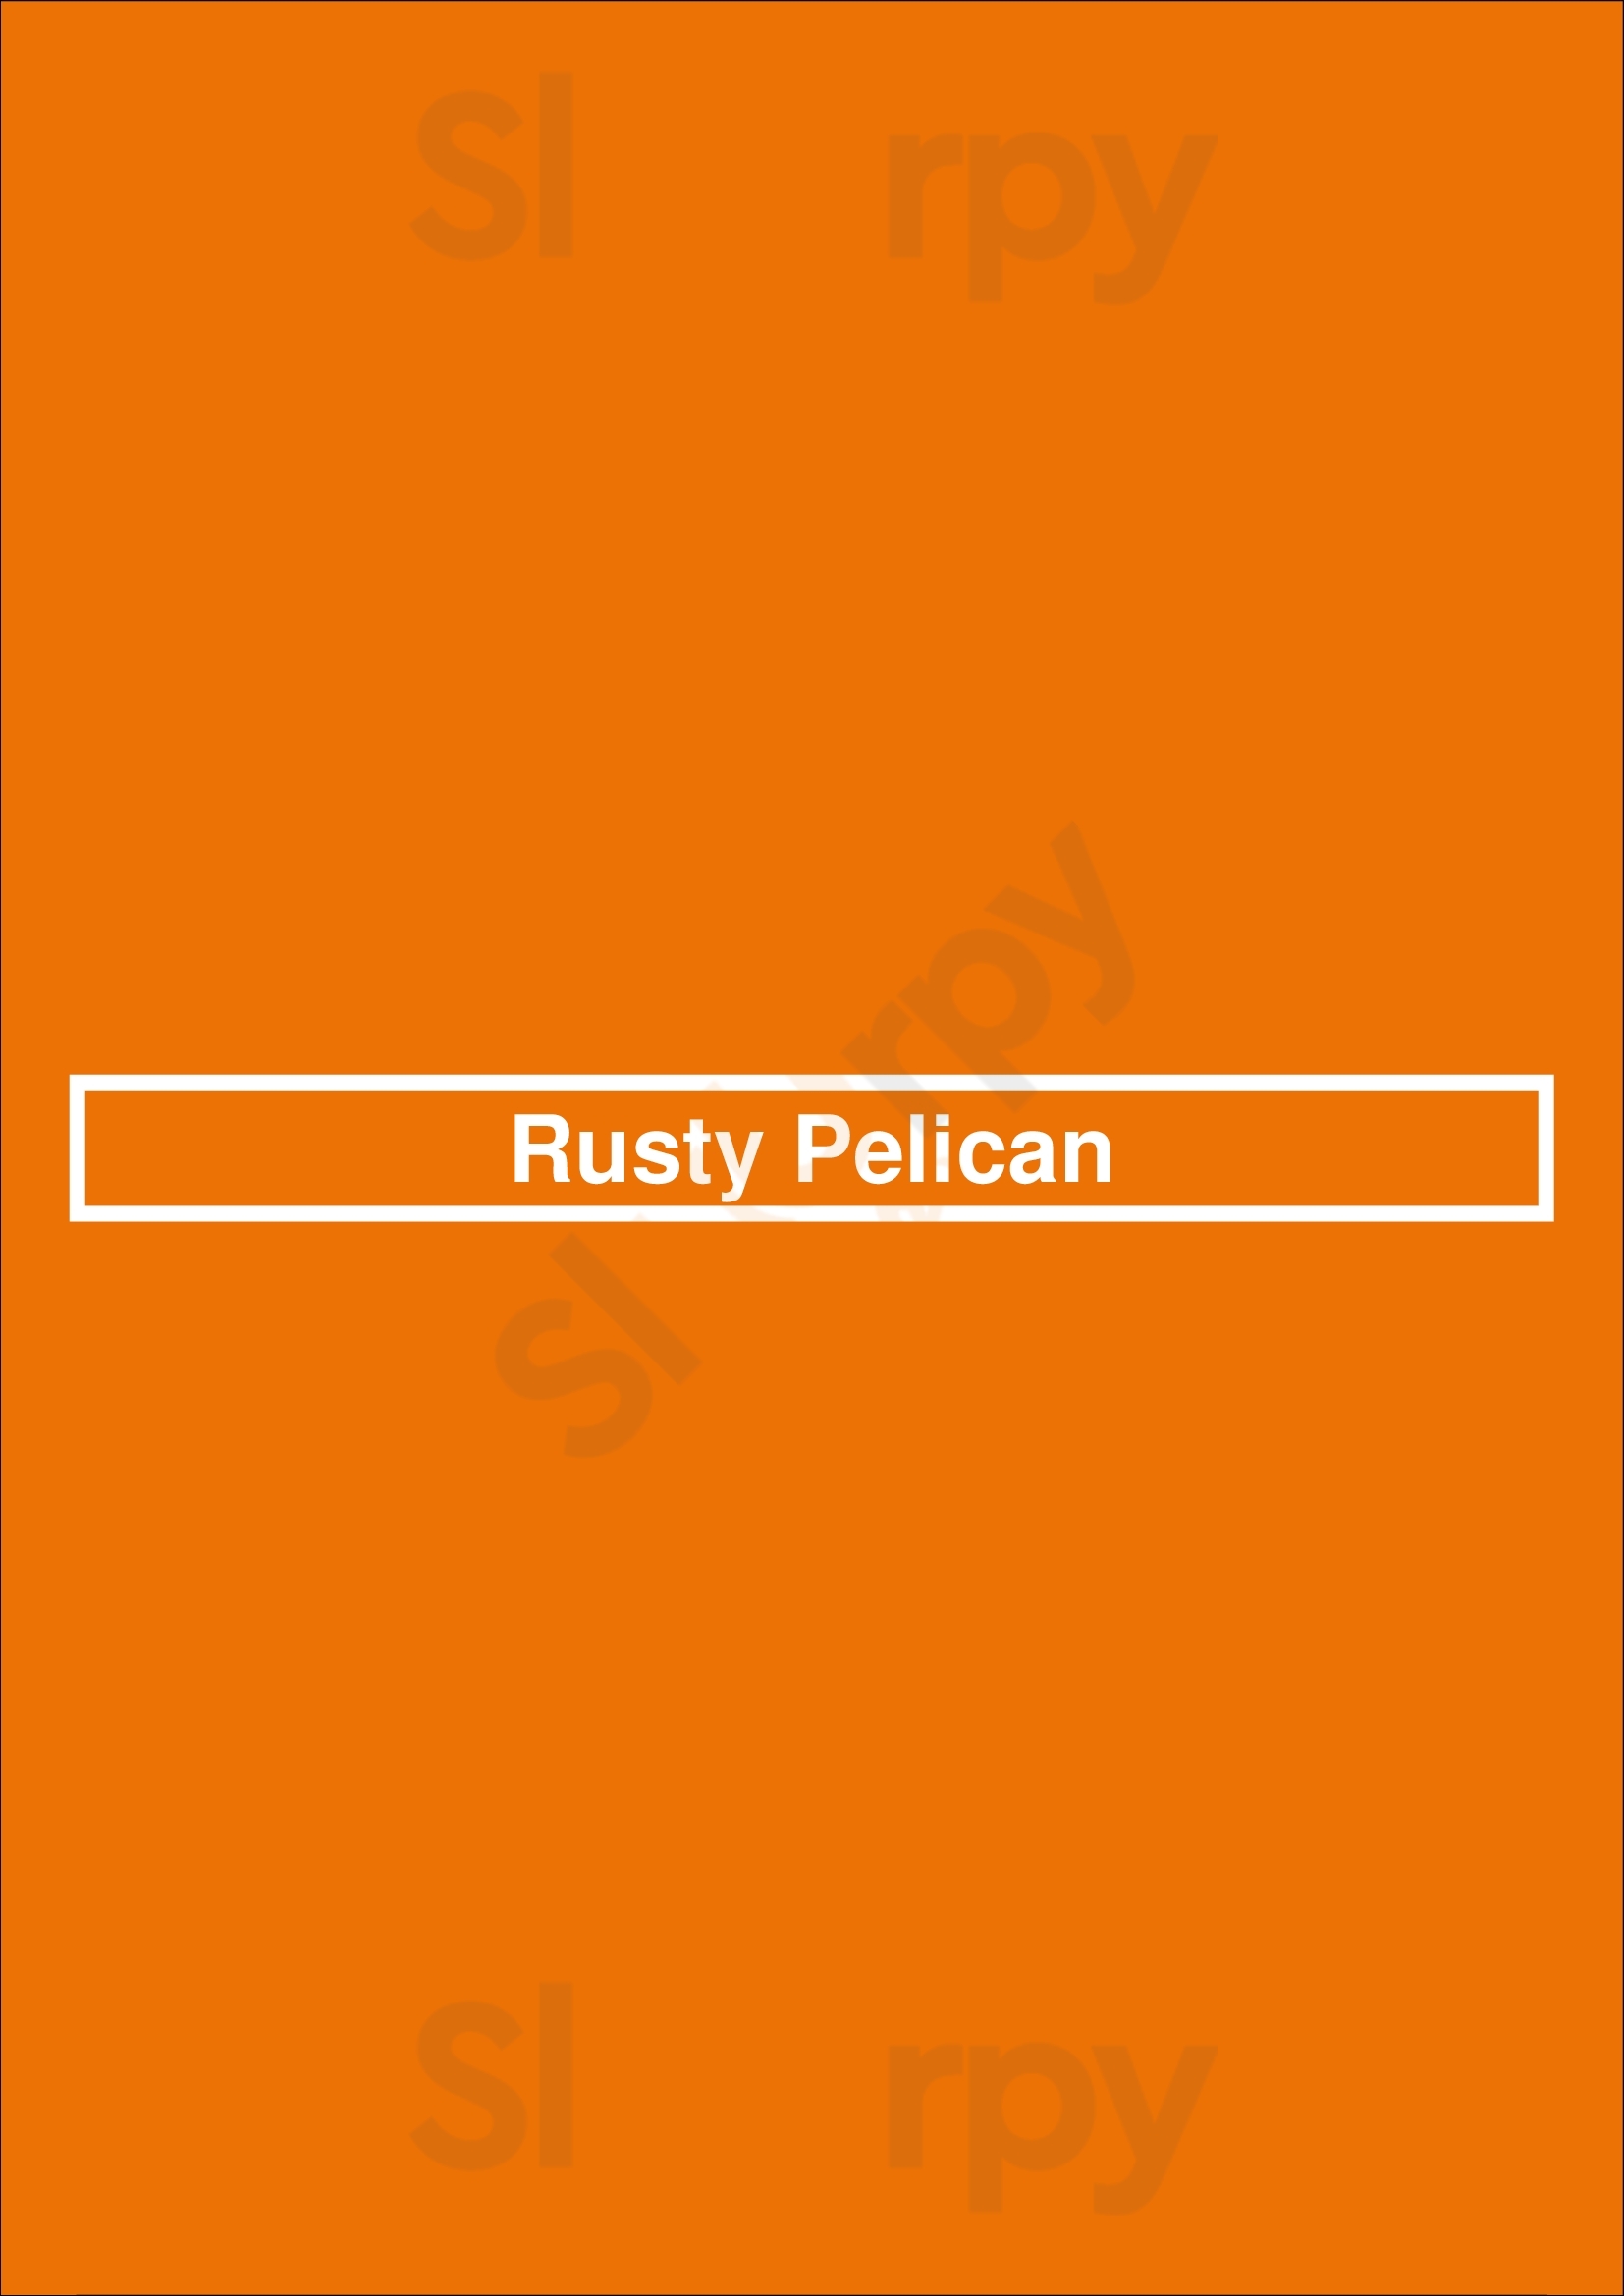 Rusty Pelican Red Deer Menu - 1